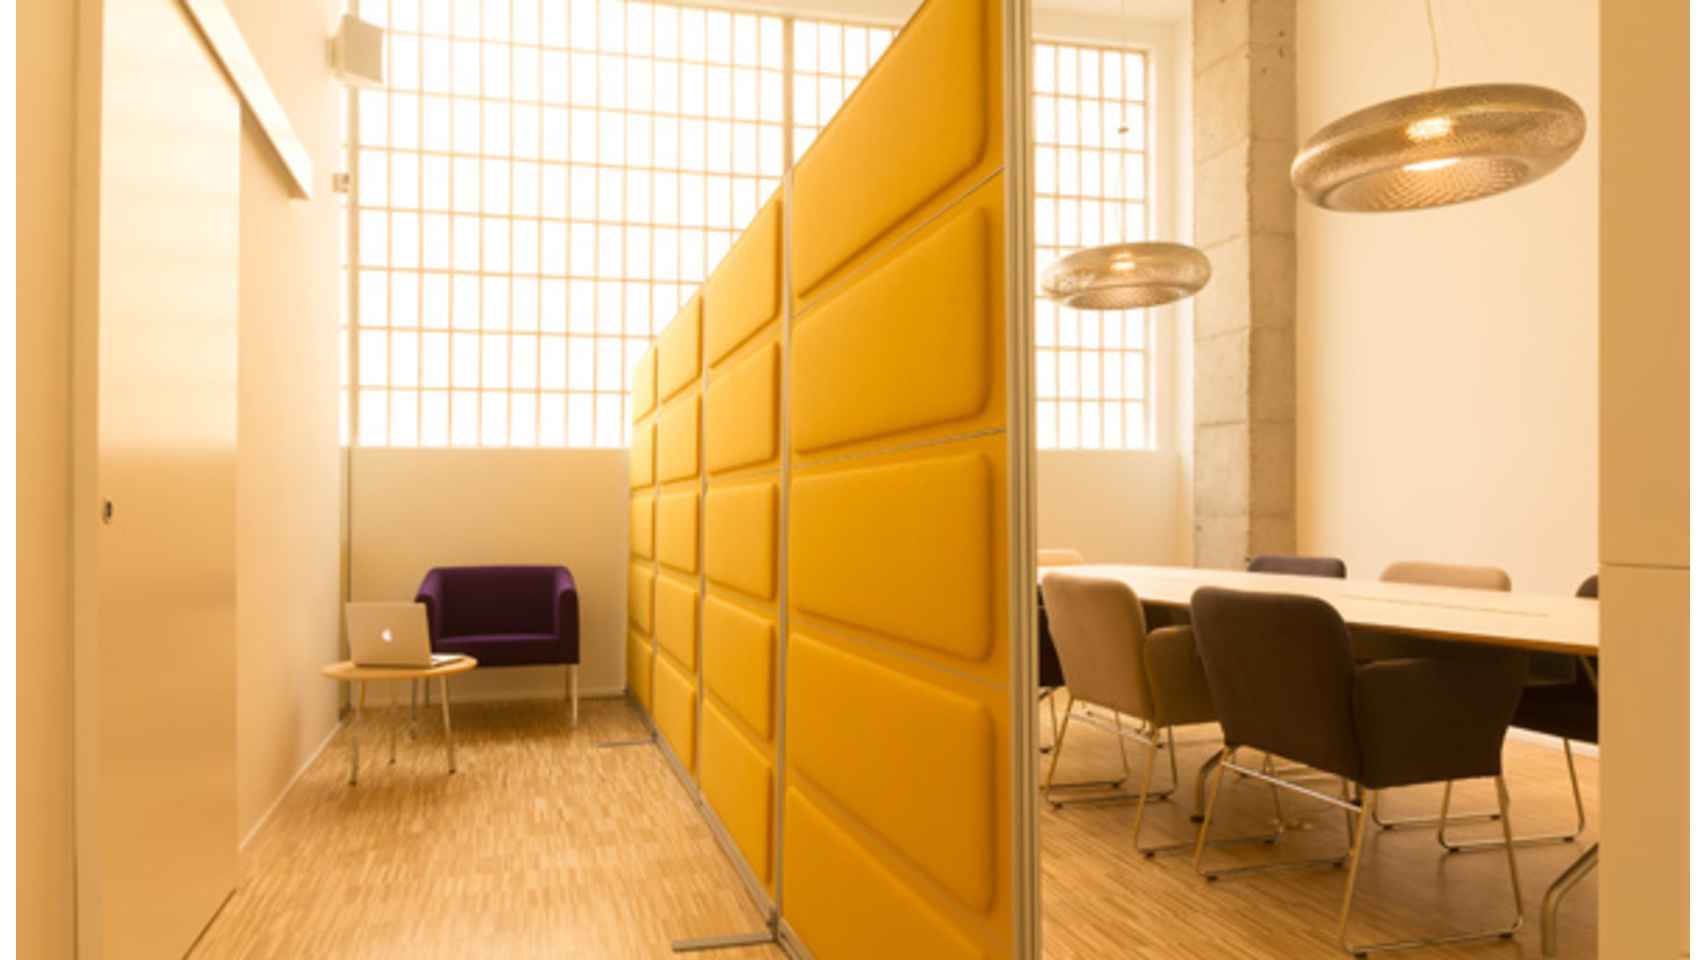 Sala de reuniones de una oficina reformada y decorada por la arquitecta Ana Girod, y climatizada con energía aeortérmica